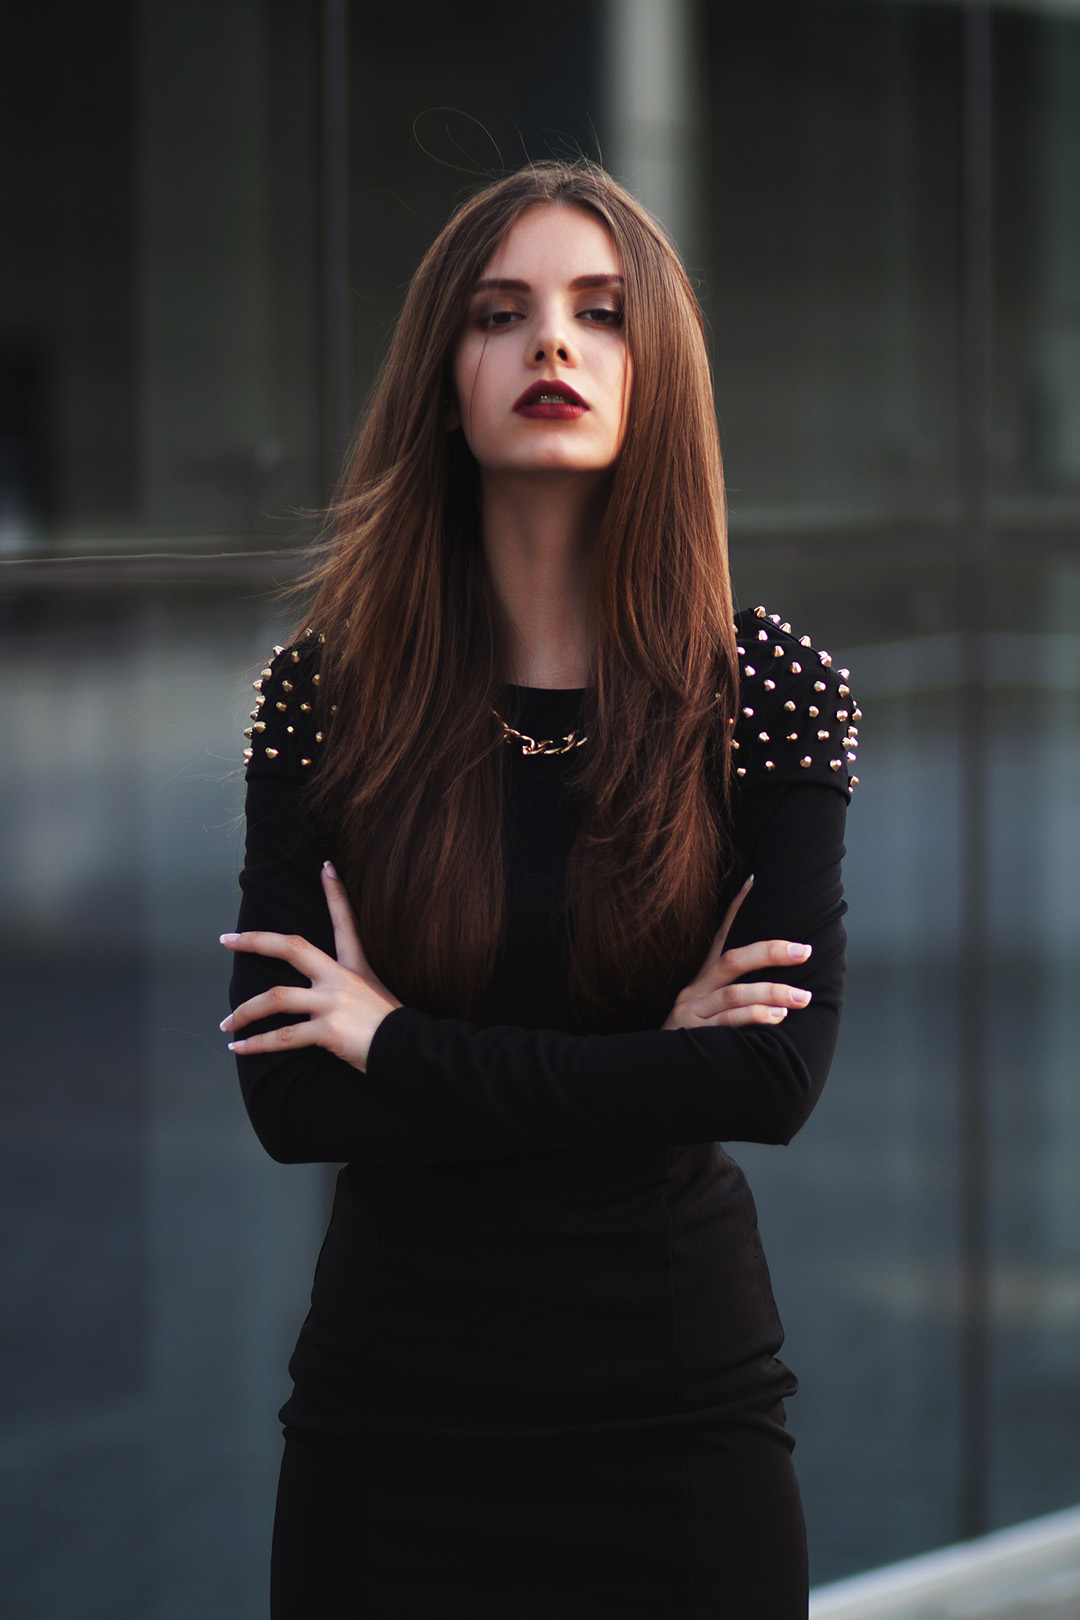 Прекрасная портретная фотосессия в тёмном стиле с очень талантливой моделью Алесей Лягиной